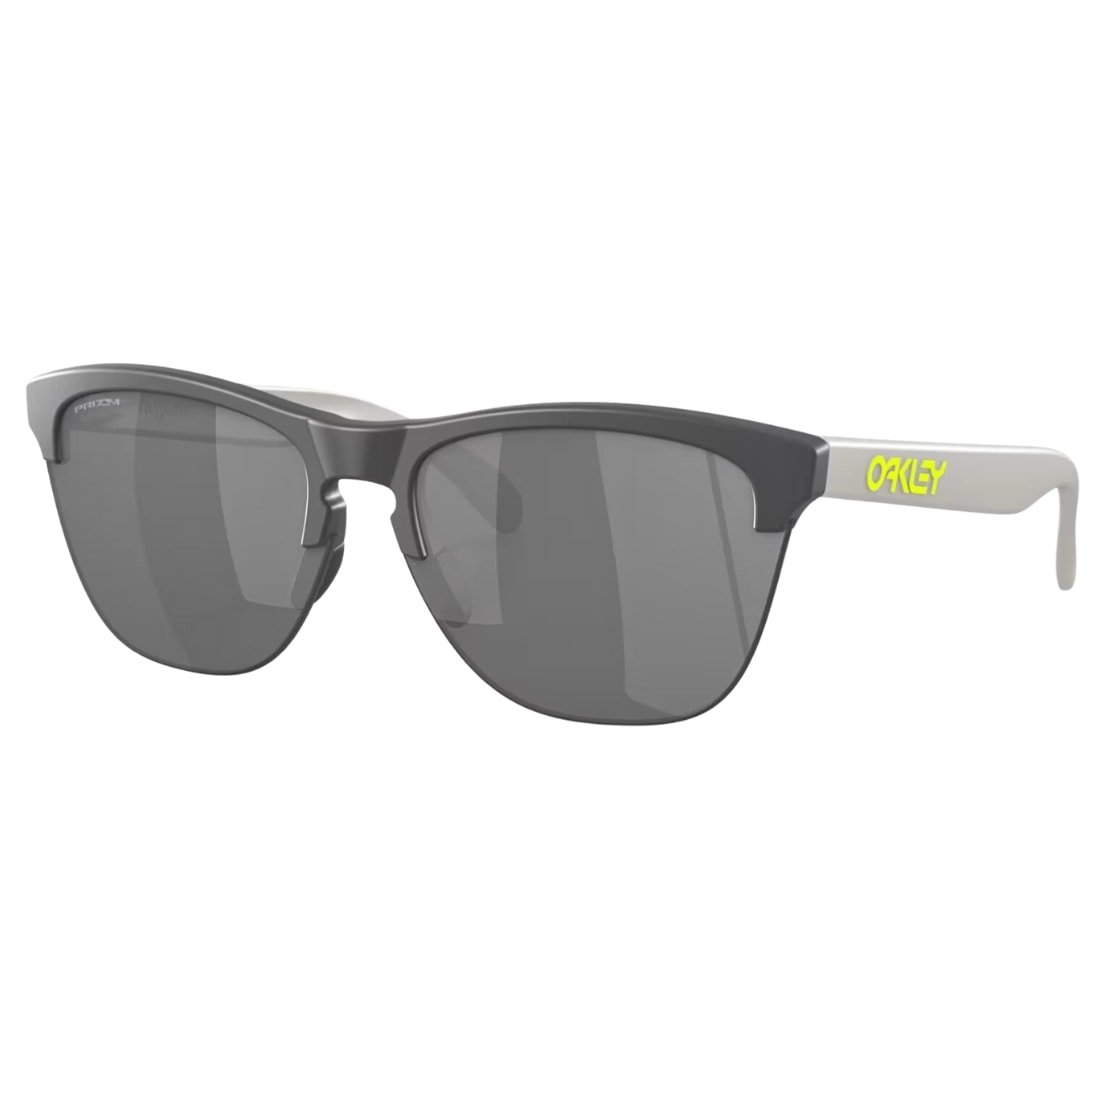 Oakley Frogskins Lite Sunglasses - Matte Dark Grey/Prizm Black - Round Sunglasses by Oakley